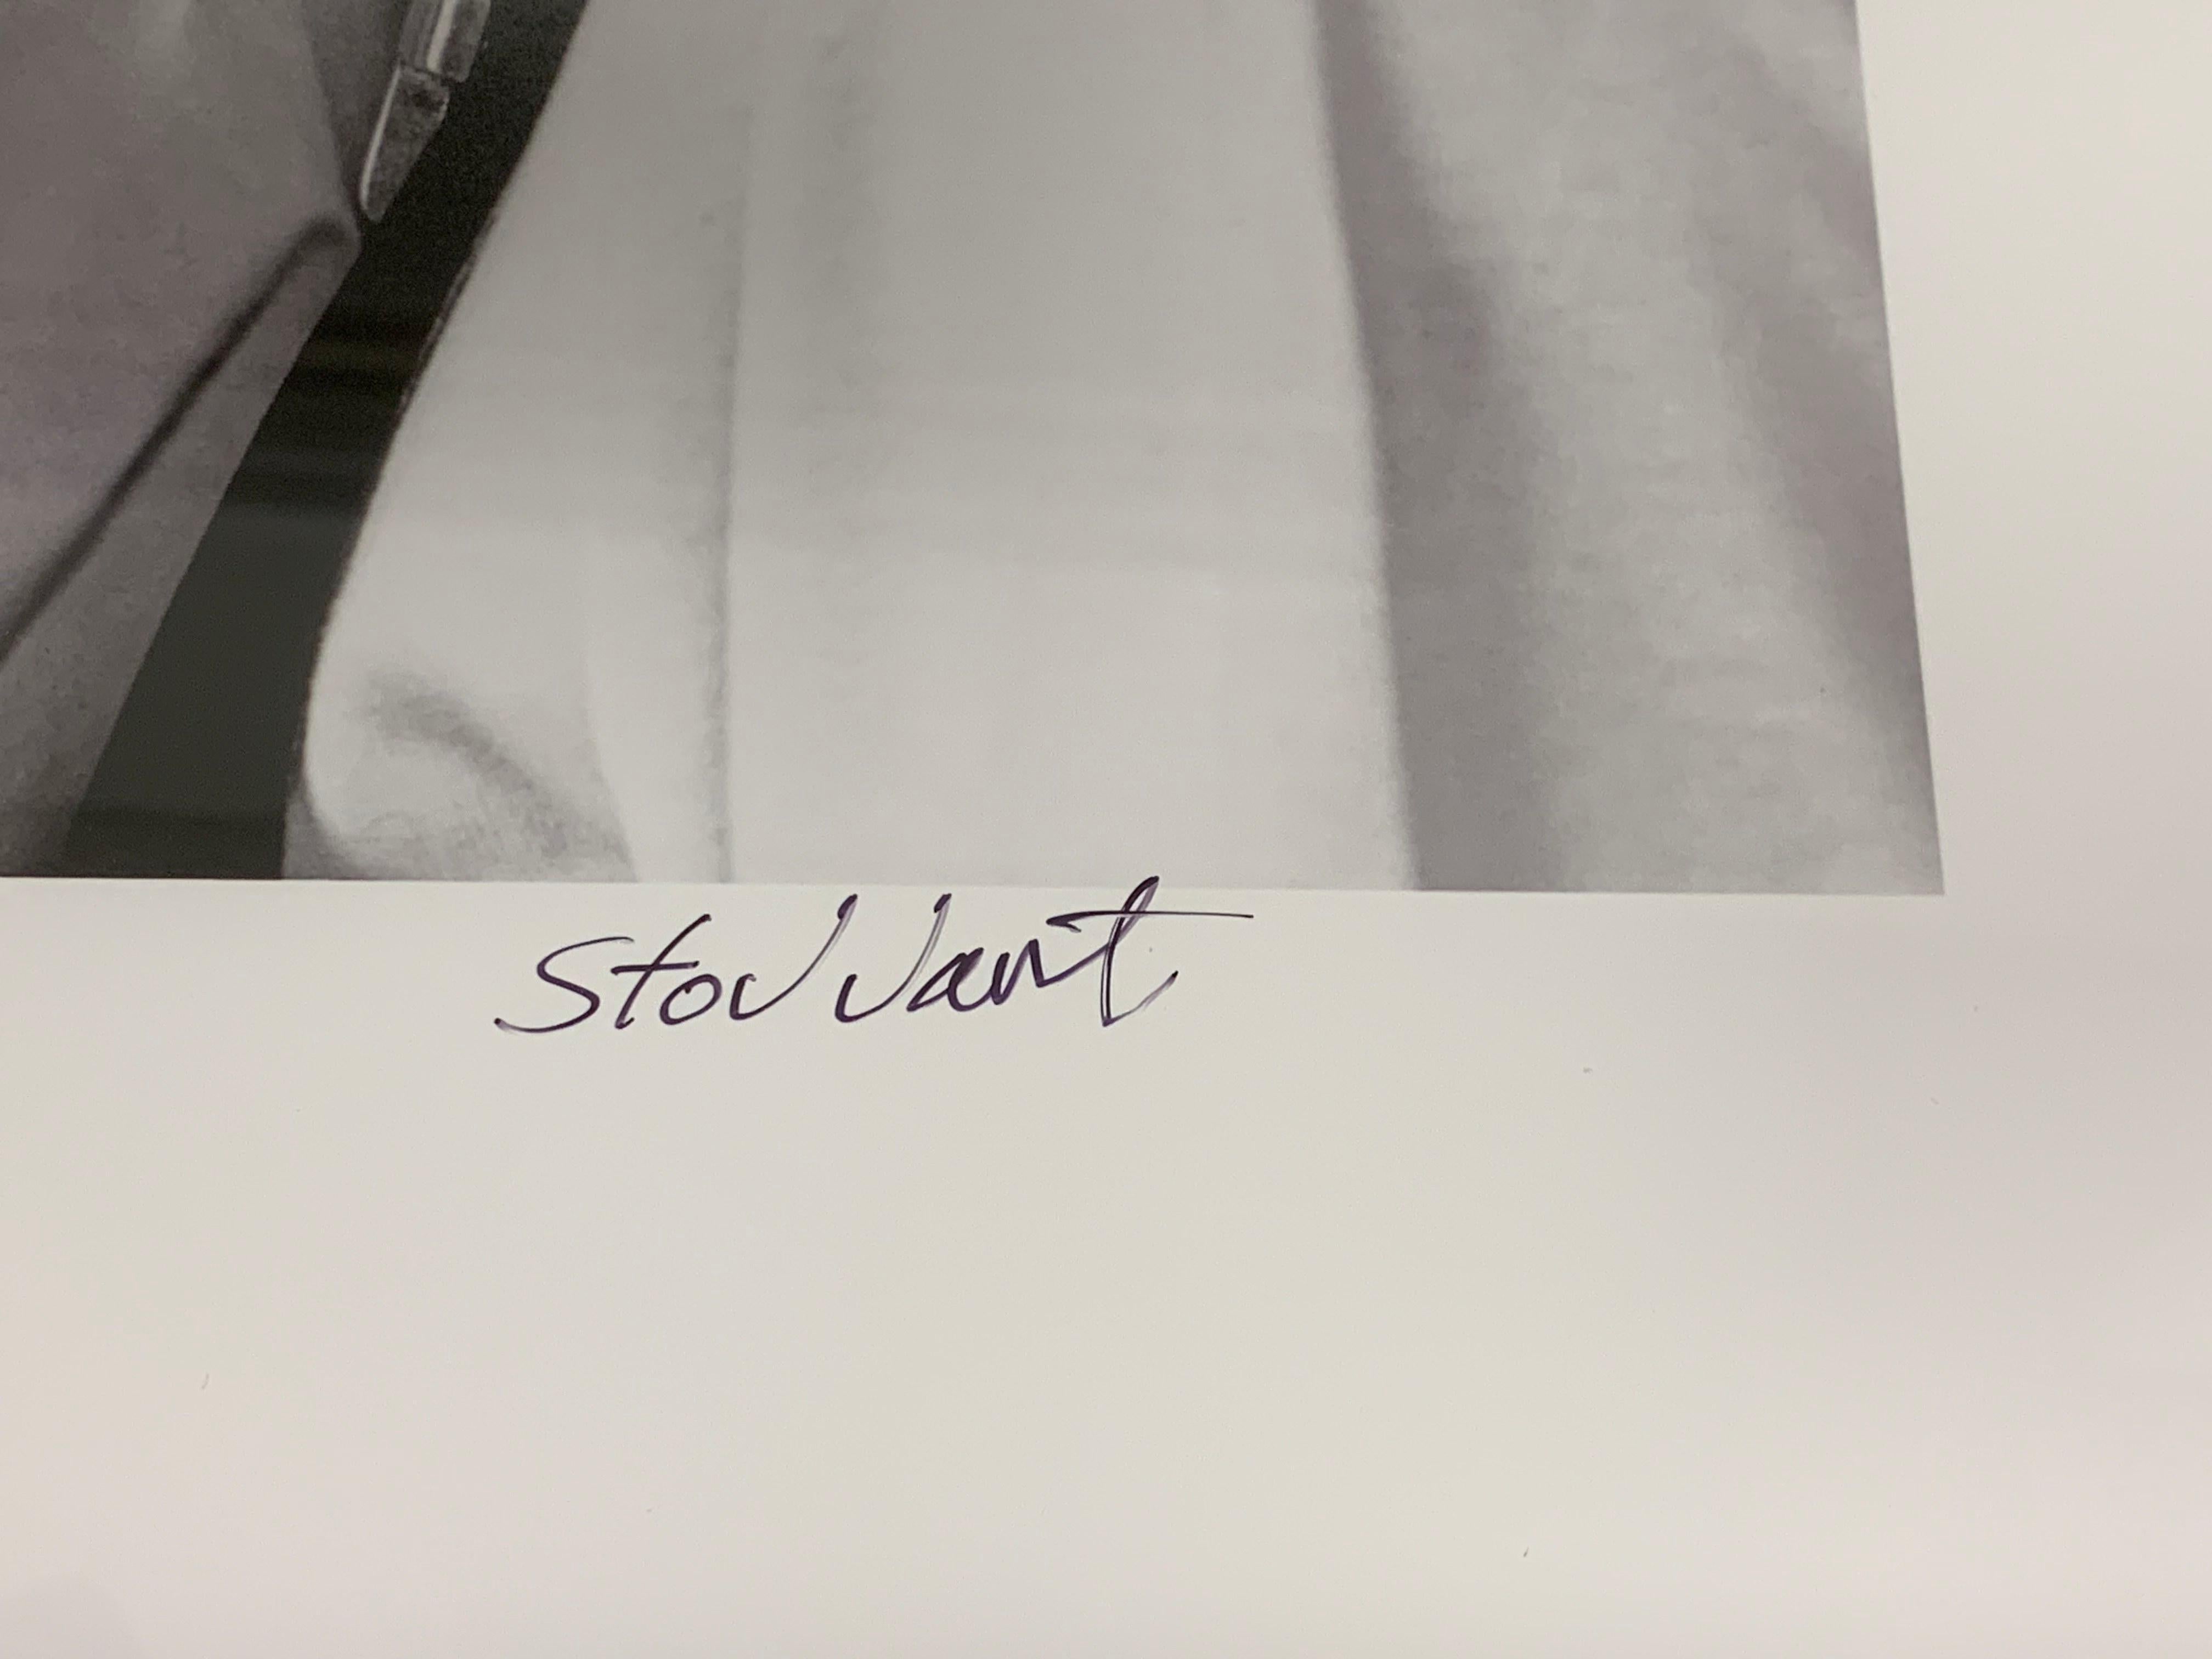 Daniel Craig Contact Sheet (édition limitée à 25 exemplaires) - Photographie de célébrités - Noir Portrait Photograph par John Stoddart